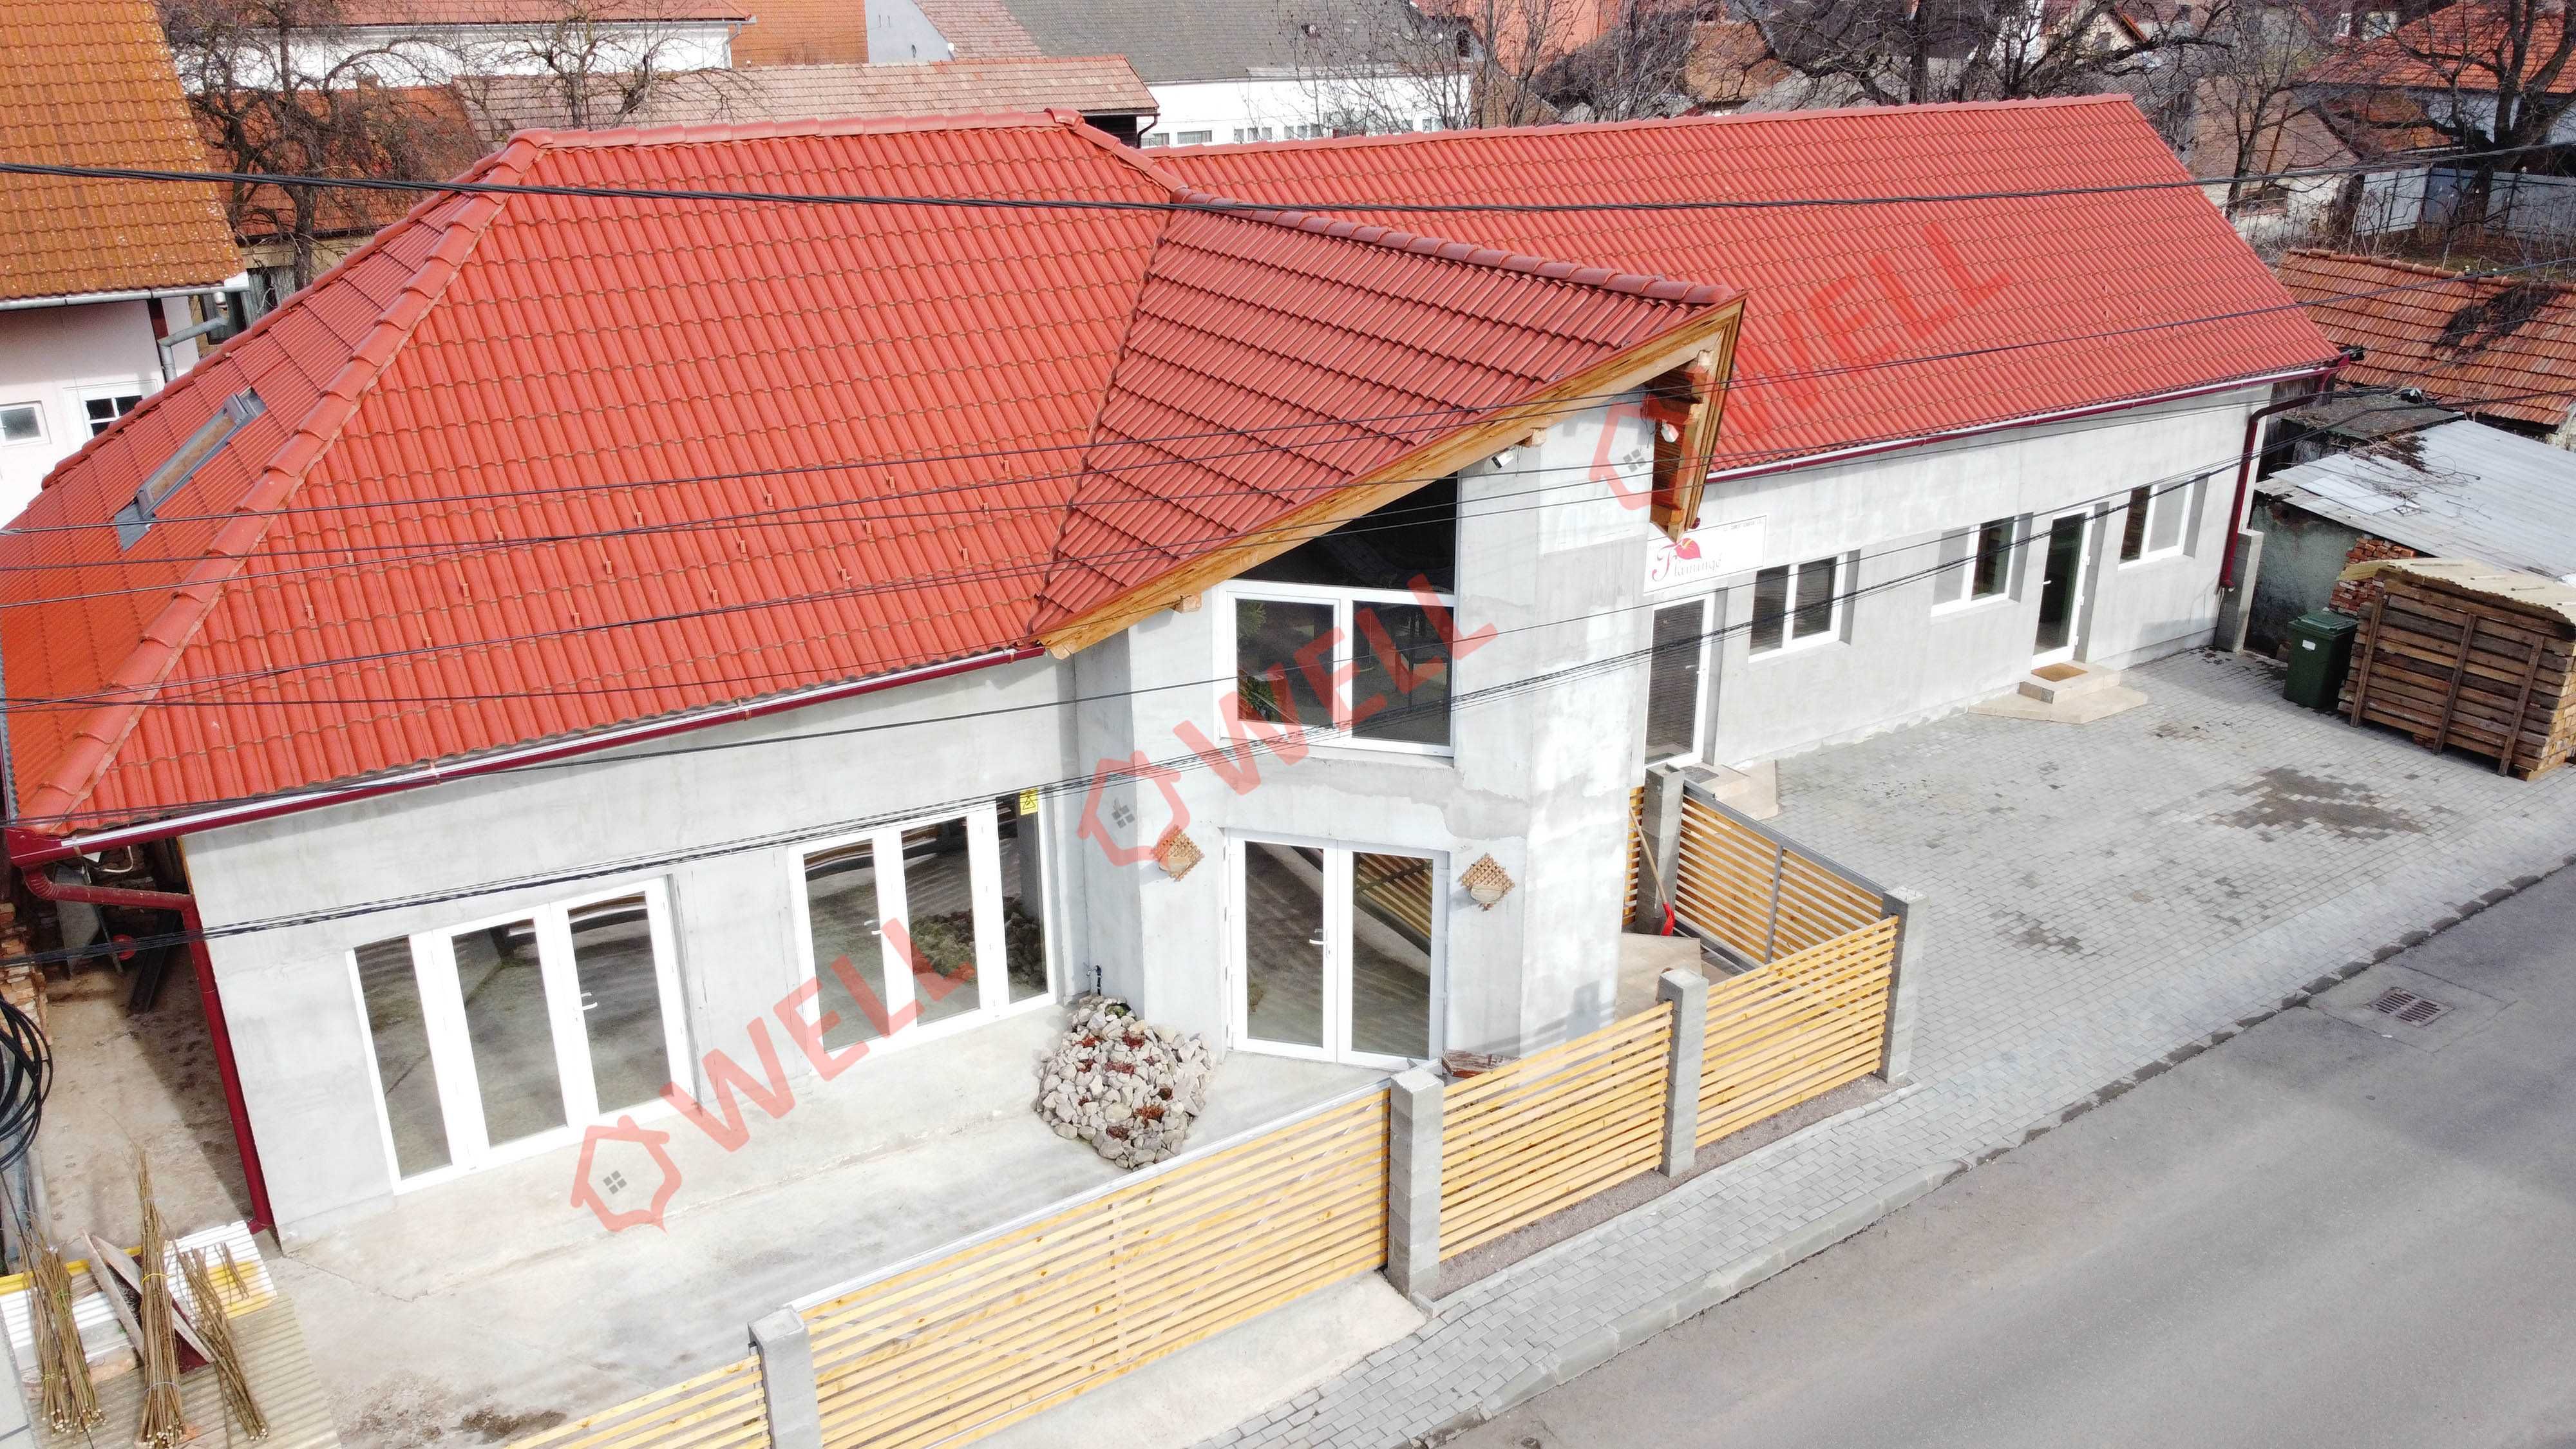 De vânzare proprietate cu destinație mixtă, în Târgu Secuiesc!